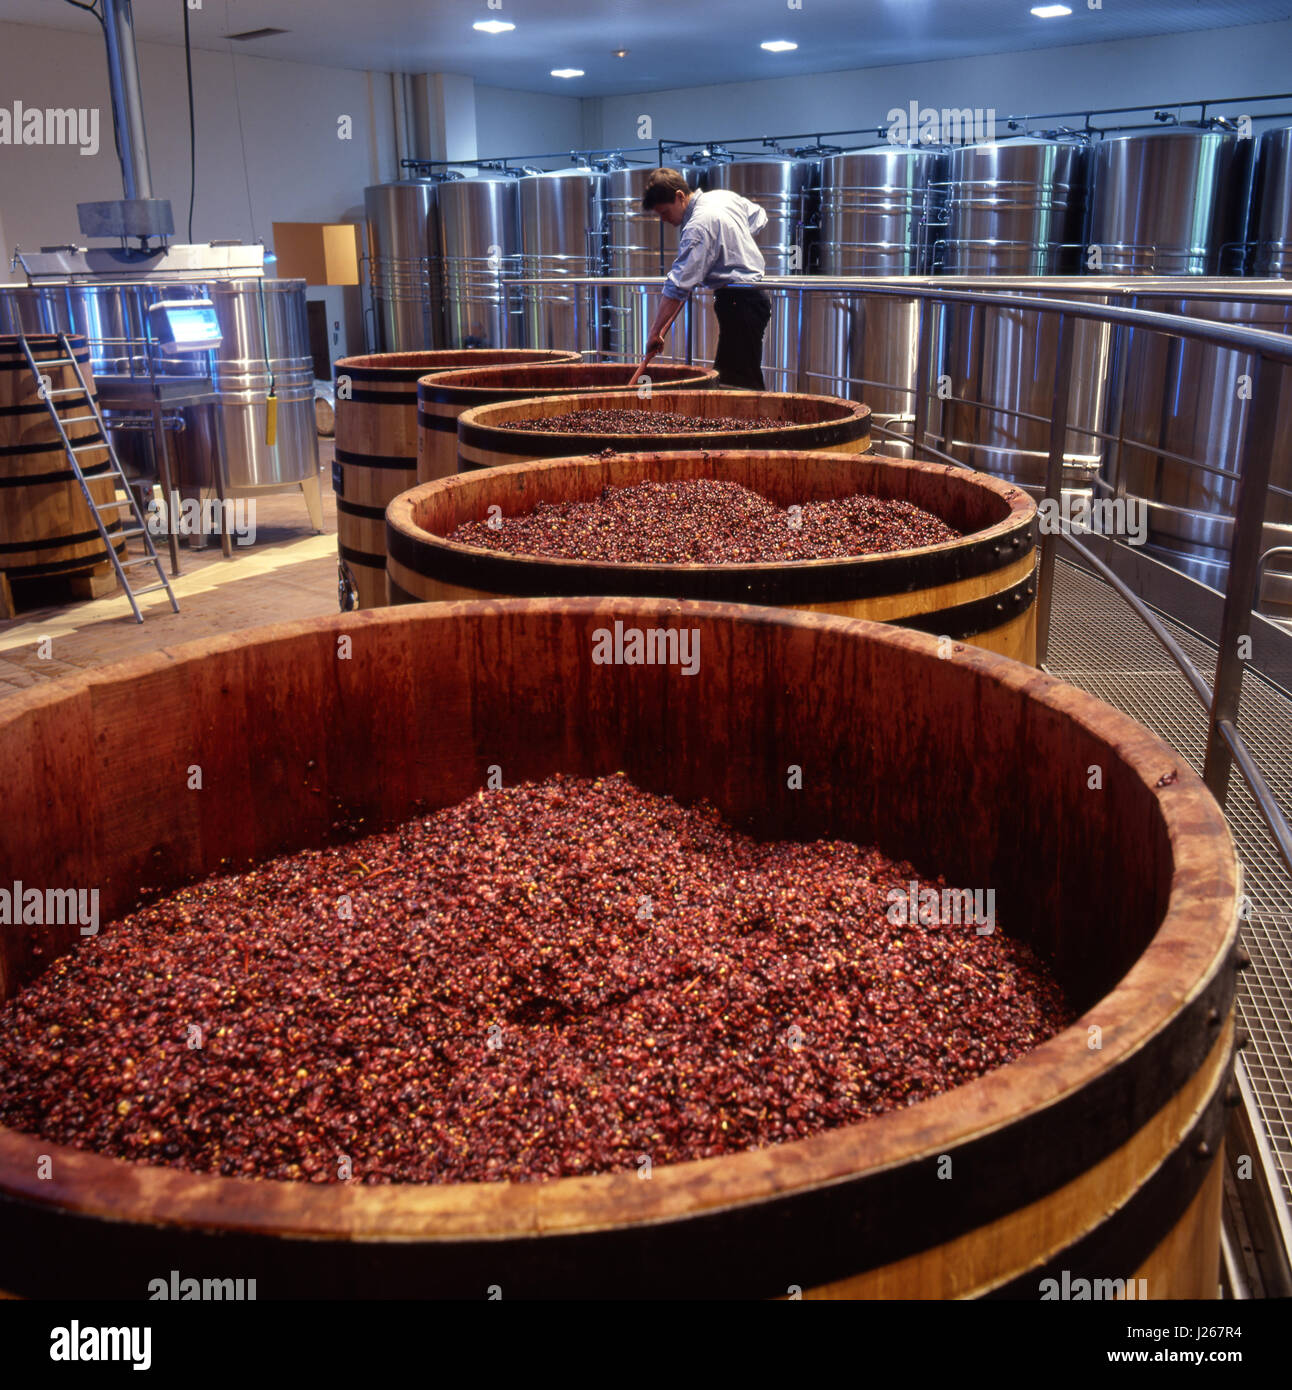 Pigeage, brechen die Haut Kruste der Pinot Noir-Trauben, die Gärung in Eichenfässern in La Sablière Weingut Louis Jadot. Beaune, Côte d ' or, Frankreich. Stockfoto